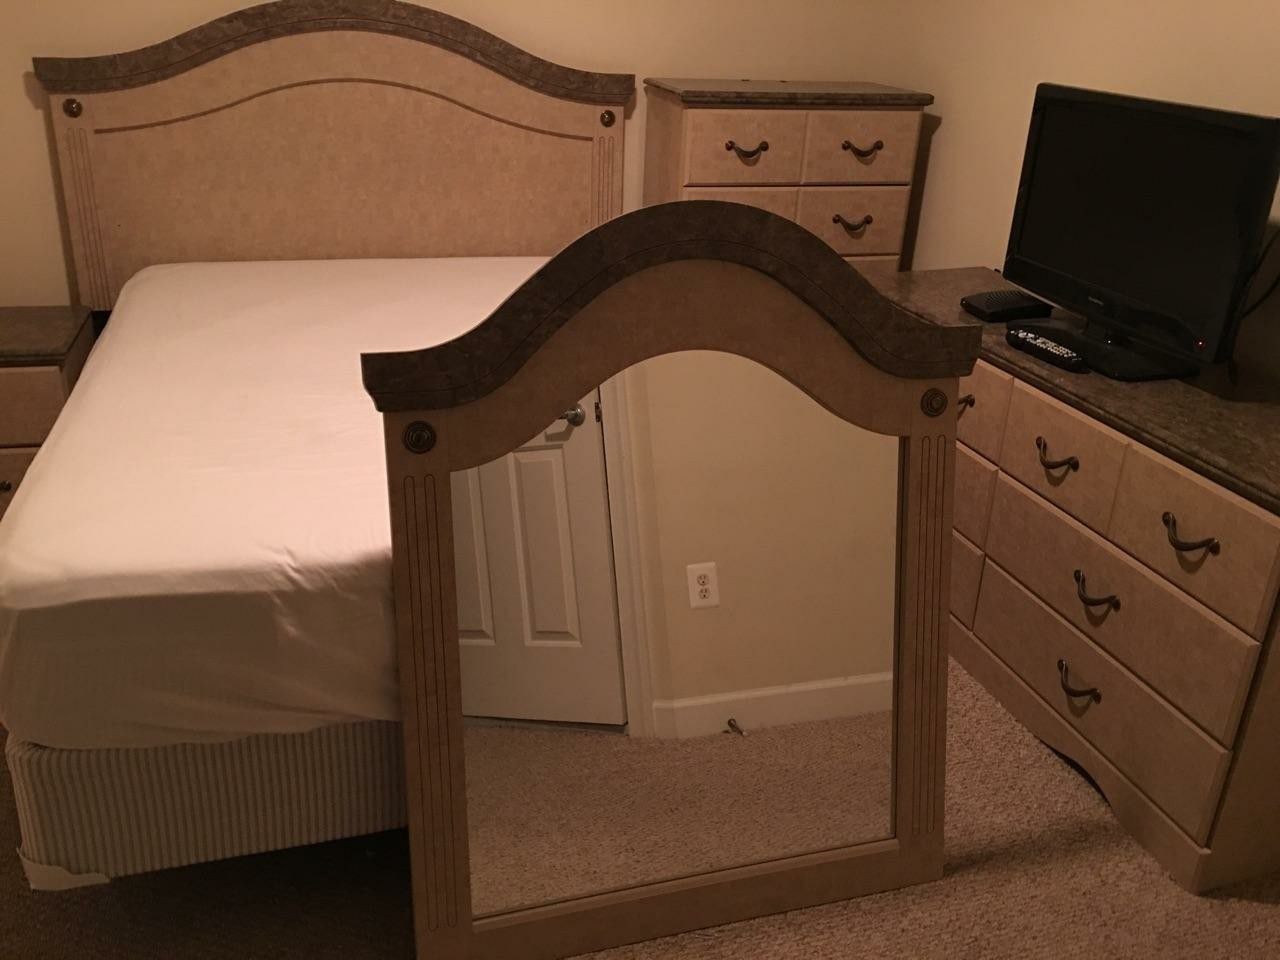 Full size bedroom set